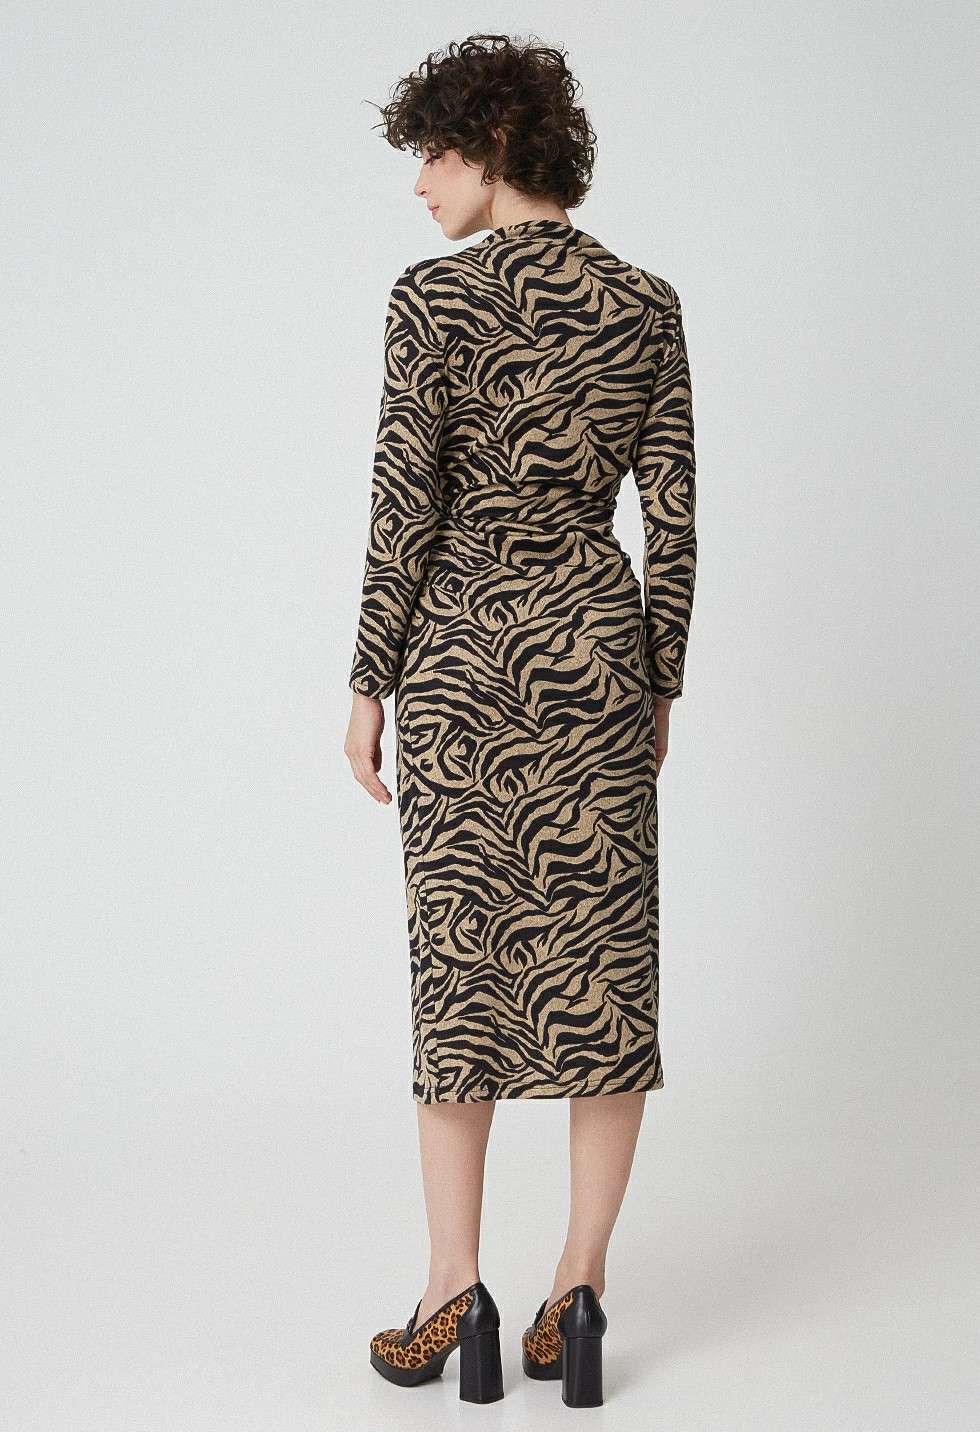 Φόρεμα animal print με σούρες, DÉSIRÉE image 1